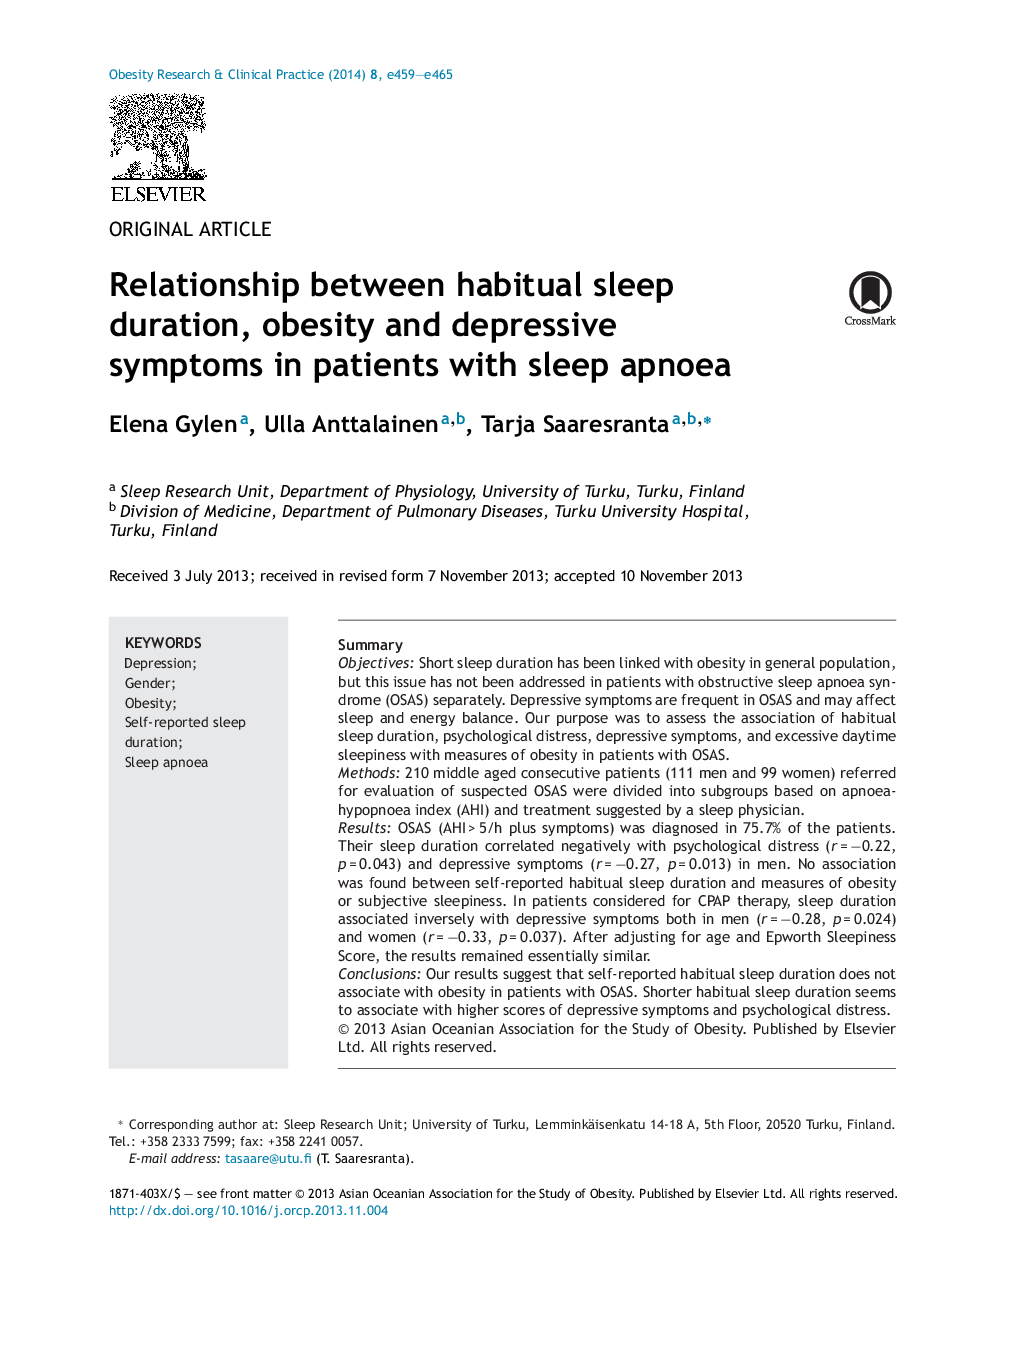 ارتباط بین مدت خواب معمول، چاقی و علائم افسردگی در بیماران مبتلا به آپنه خواب 